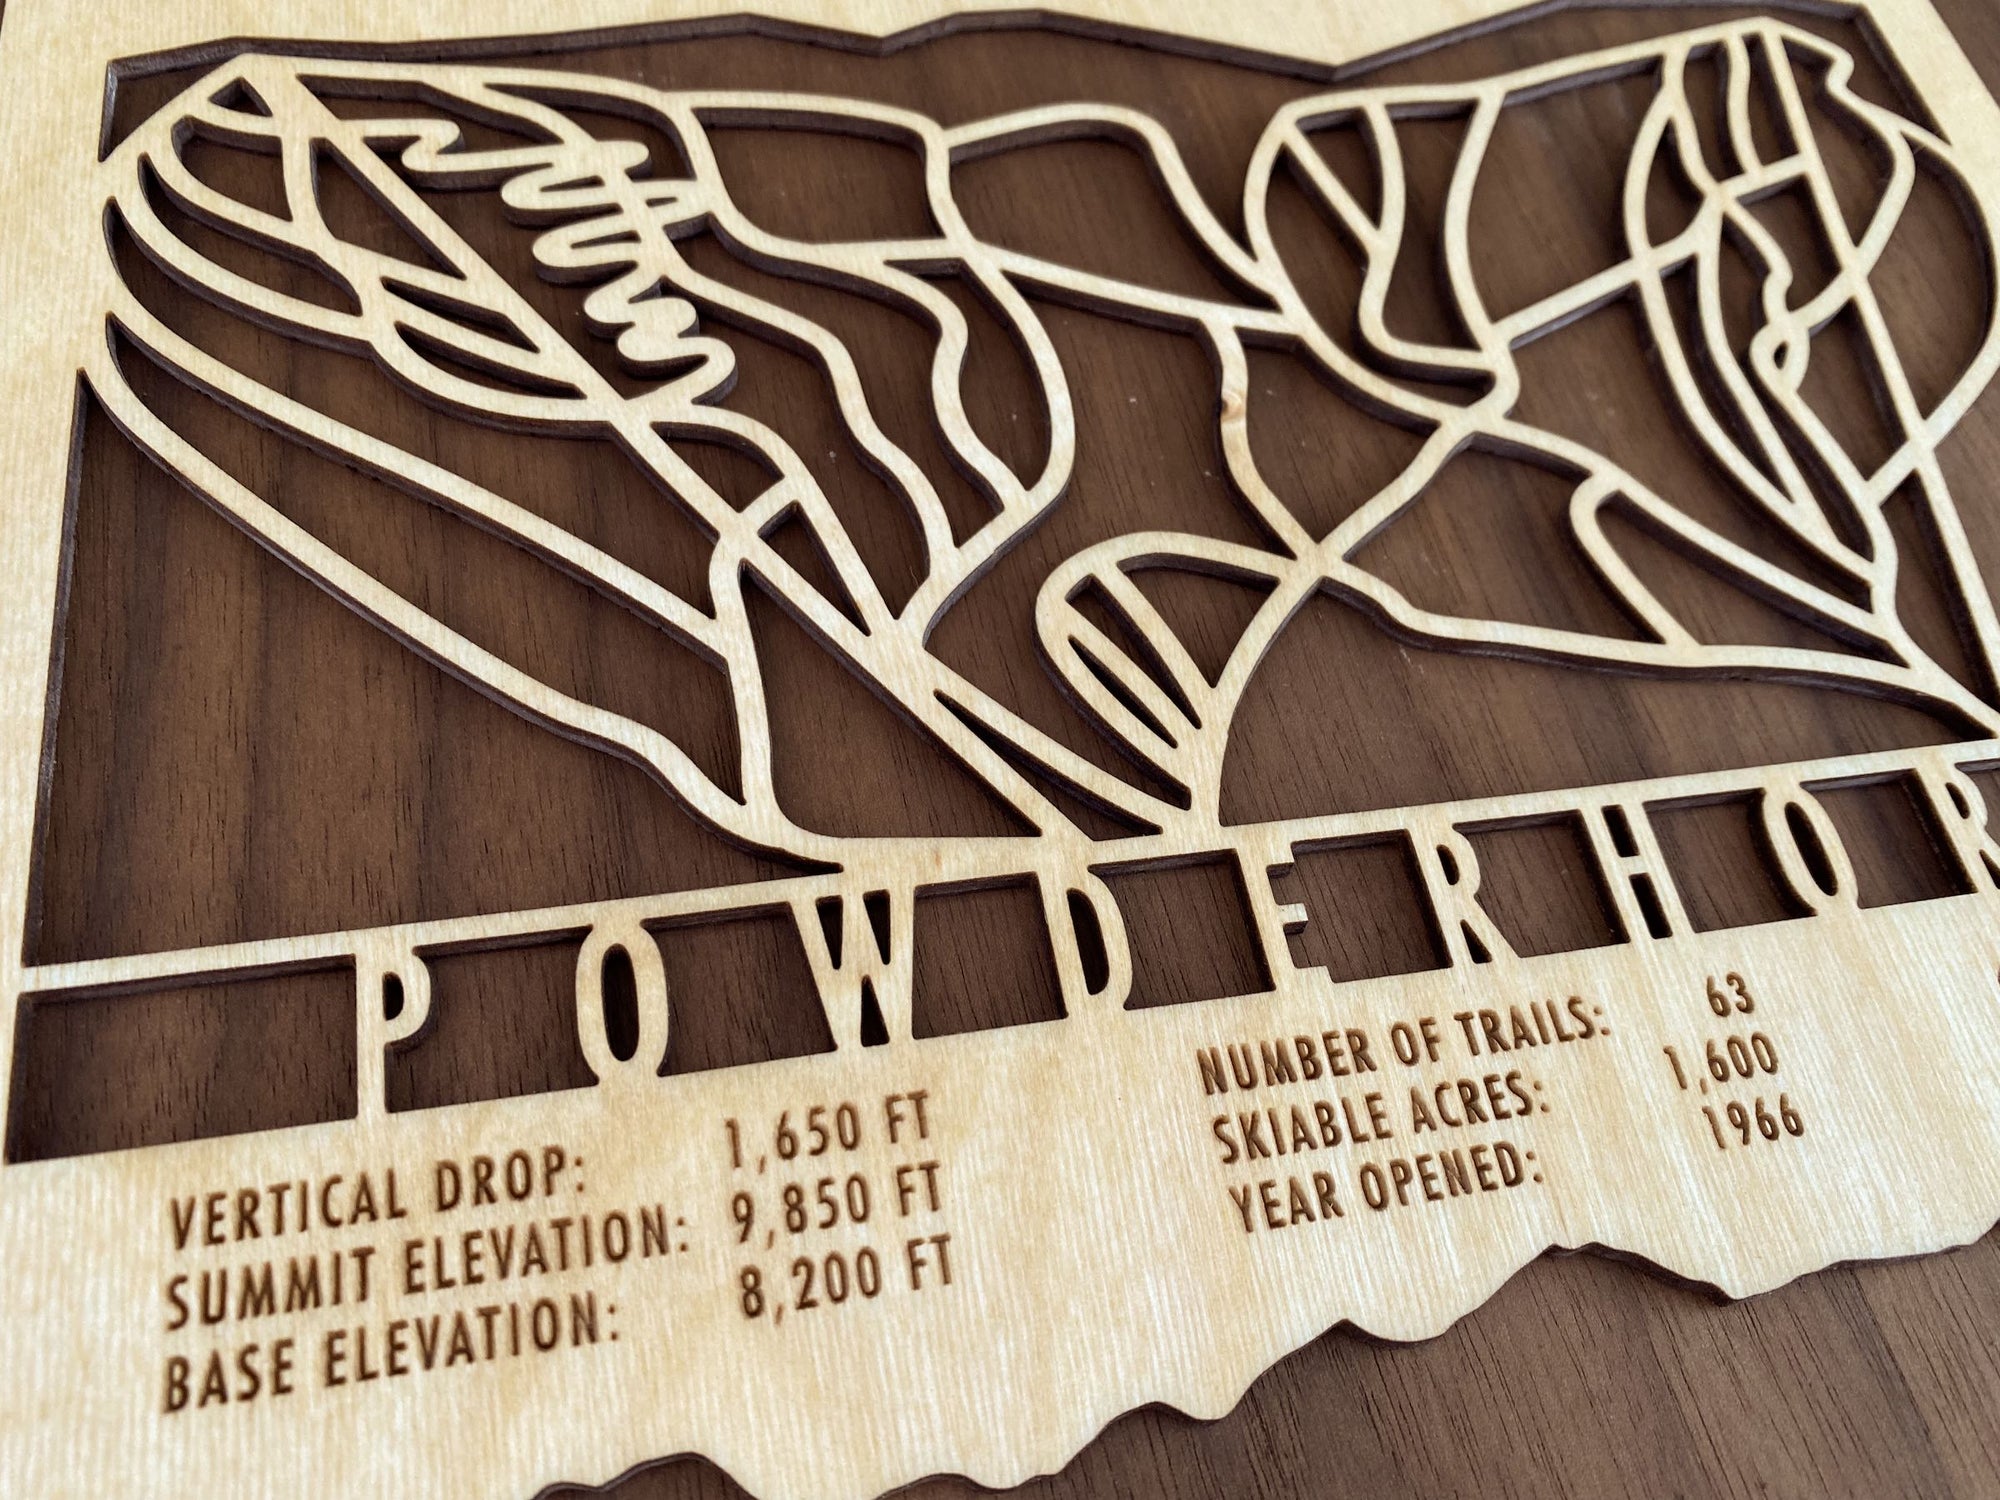 Powderhorn Ski Trail Map